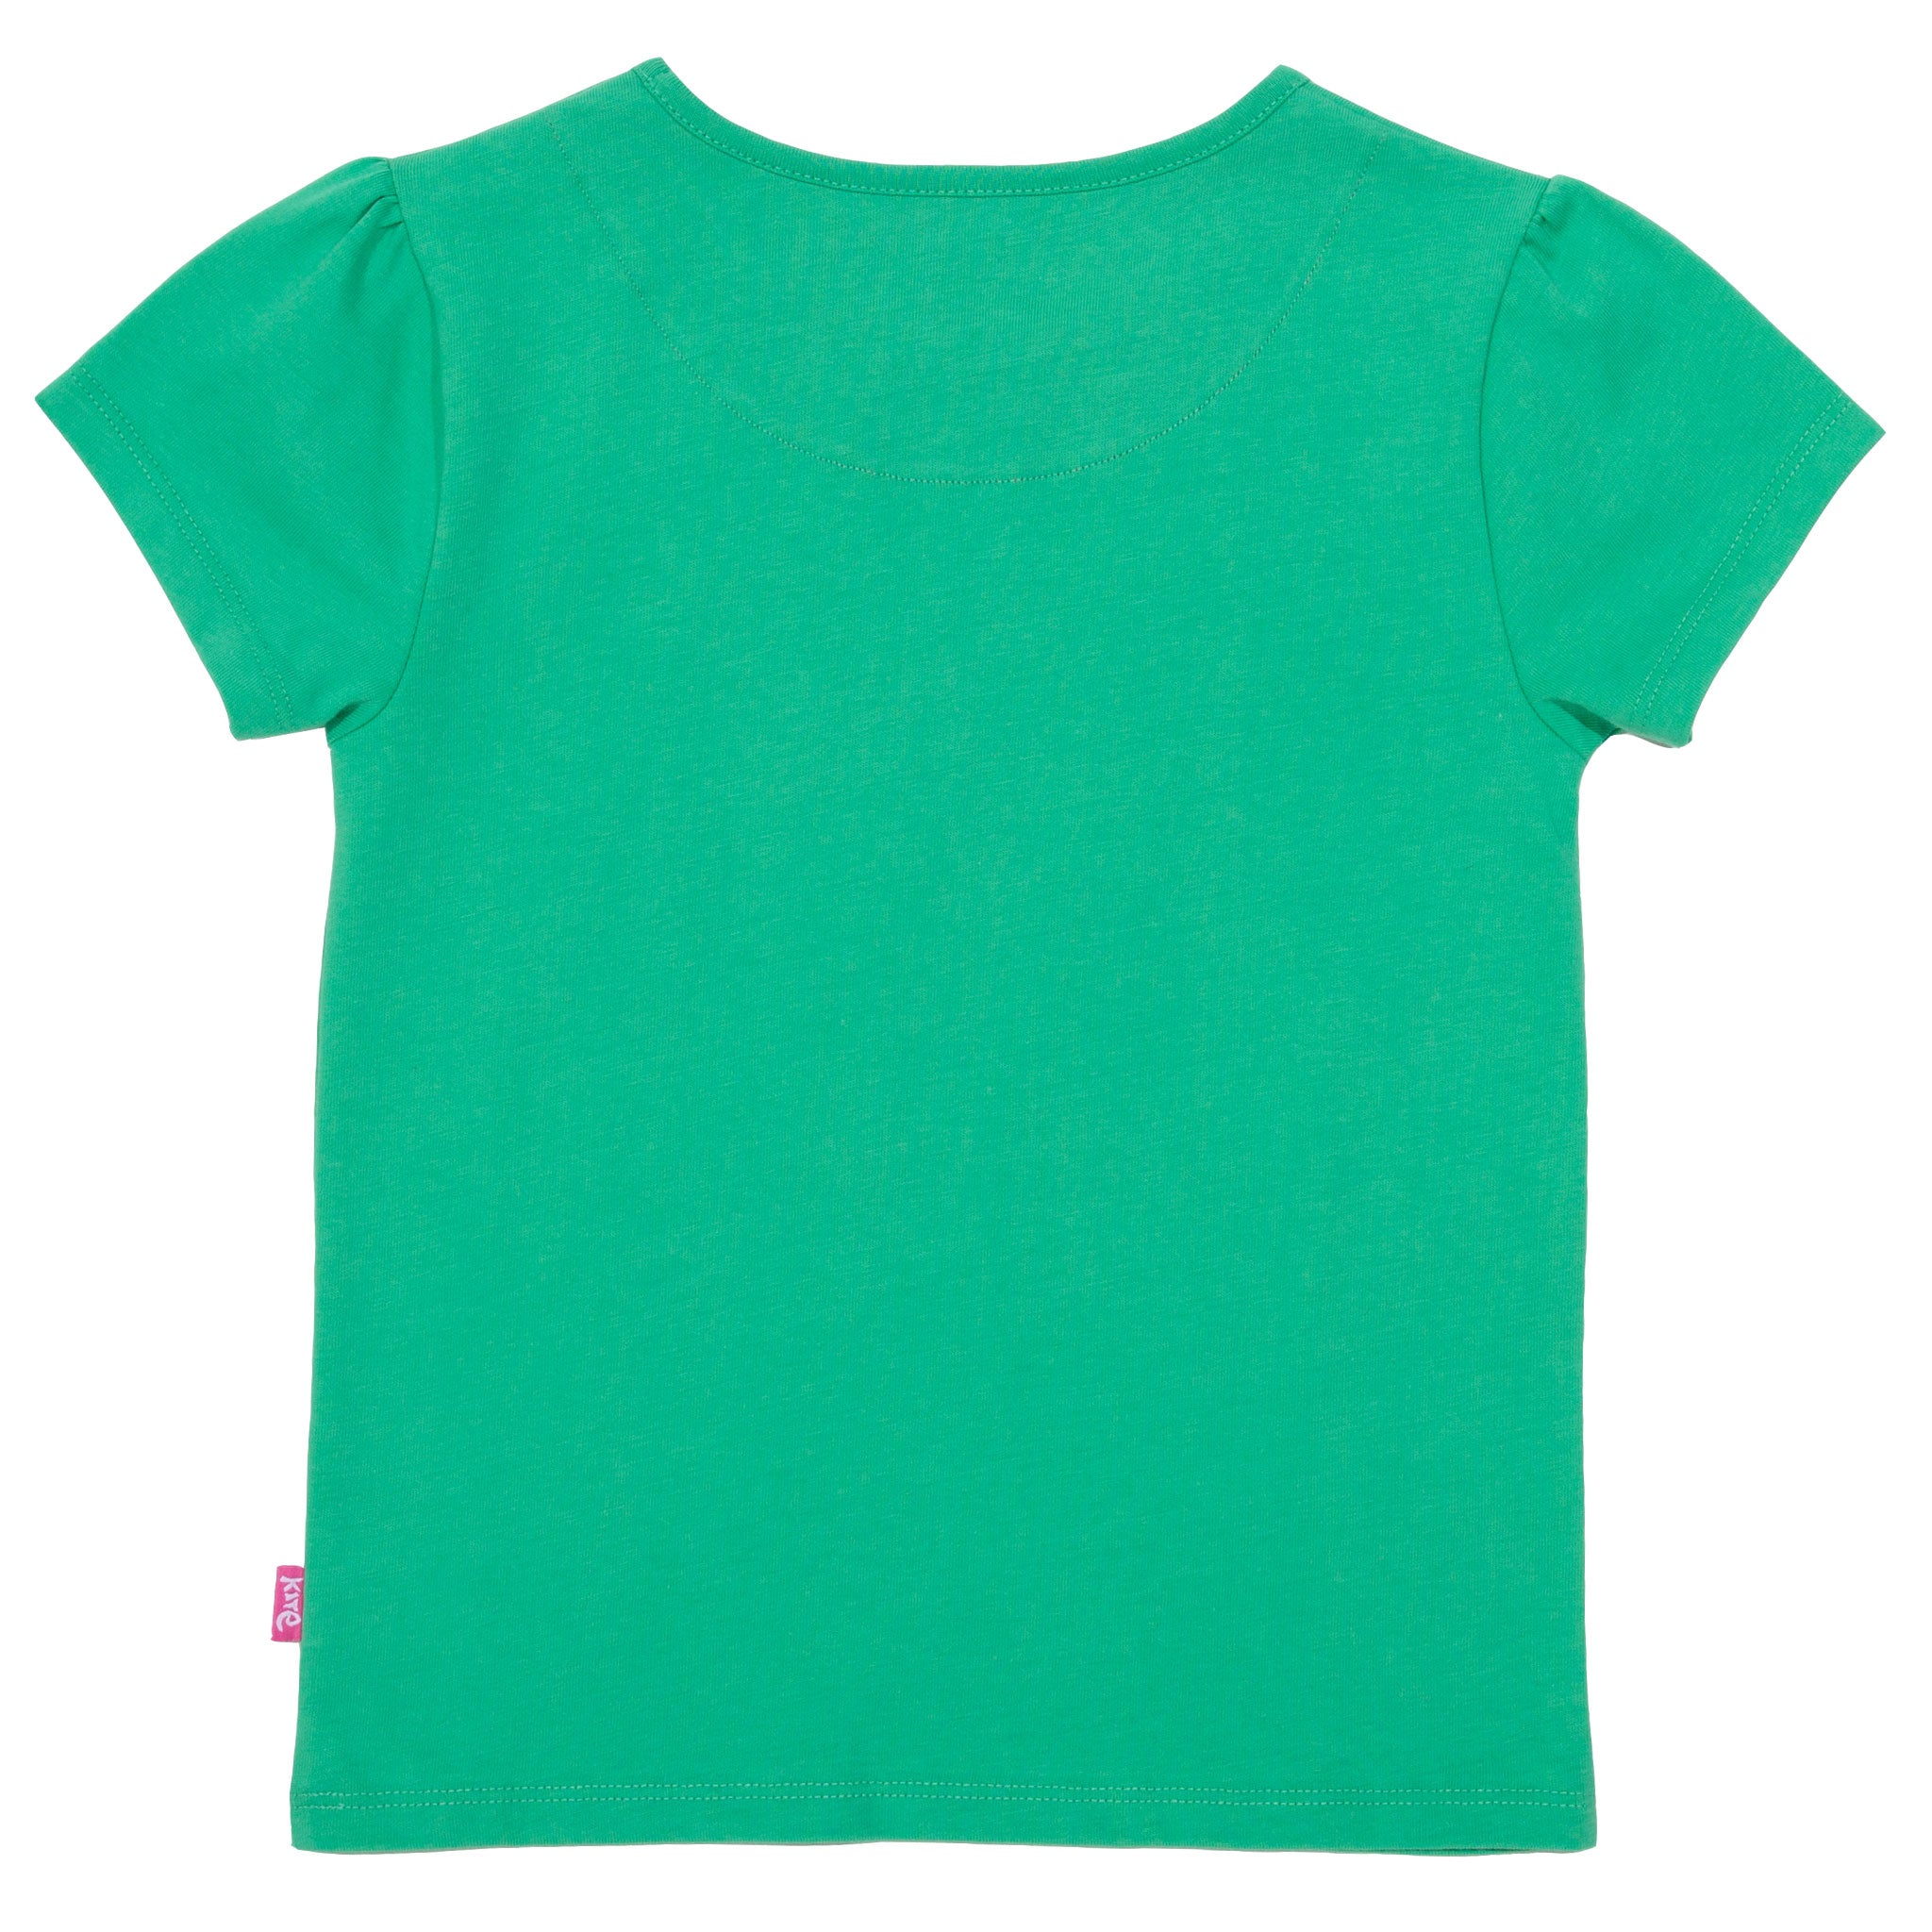 Kite Butterfly T-Shirt Short Sleeve - Green